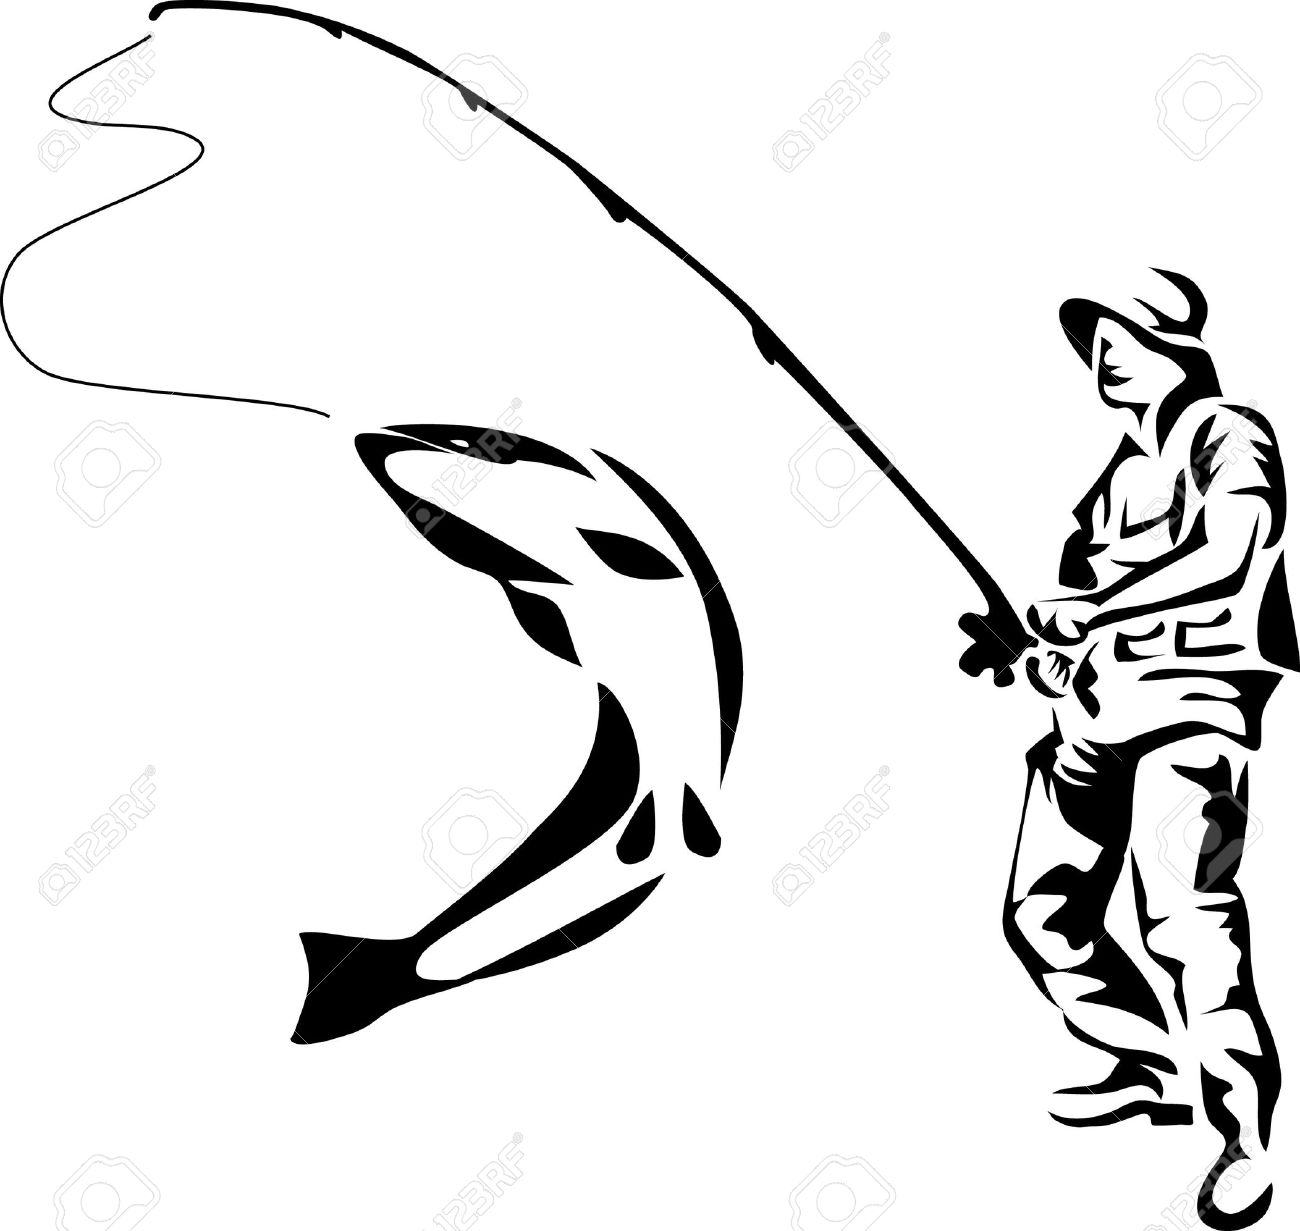 16161568-logo-pêcheur.jpg